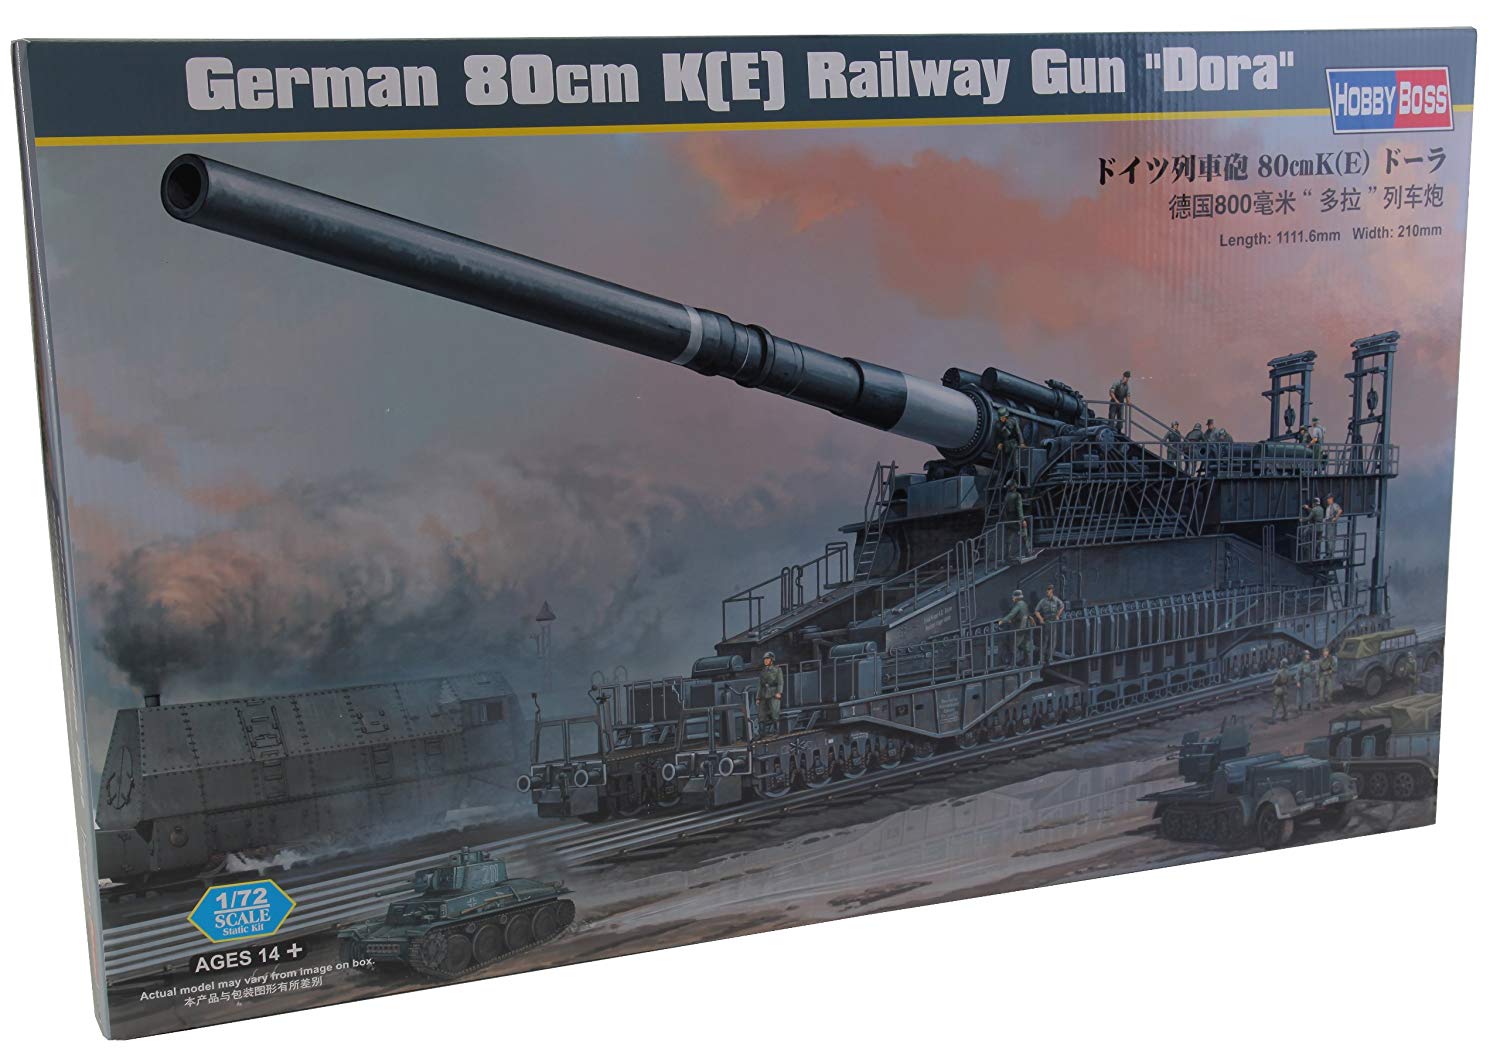 German Railway Gun 80cm K(e)  dora